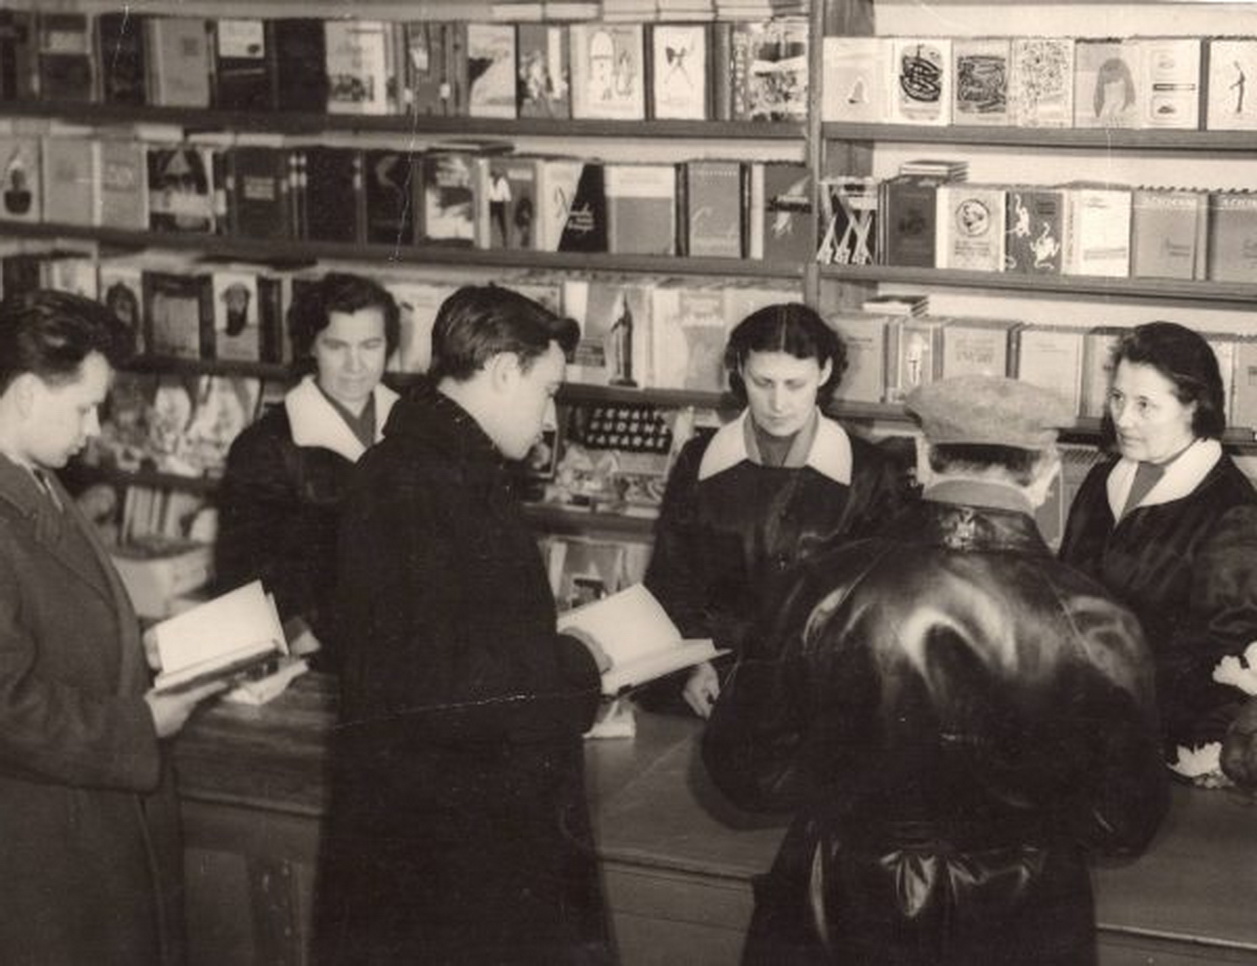 Panevėžio knygų mylėtojų meka ilgą laiką buvęs Centrinis knygynas, 1960-ieji. PAGPBVB ARCHYVŲ nuotr.